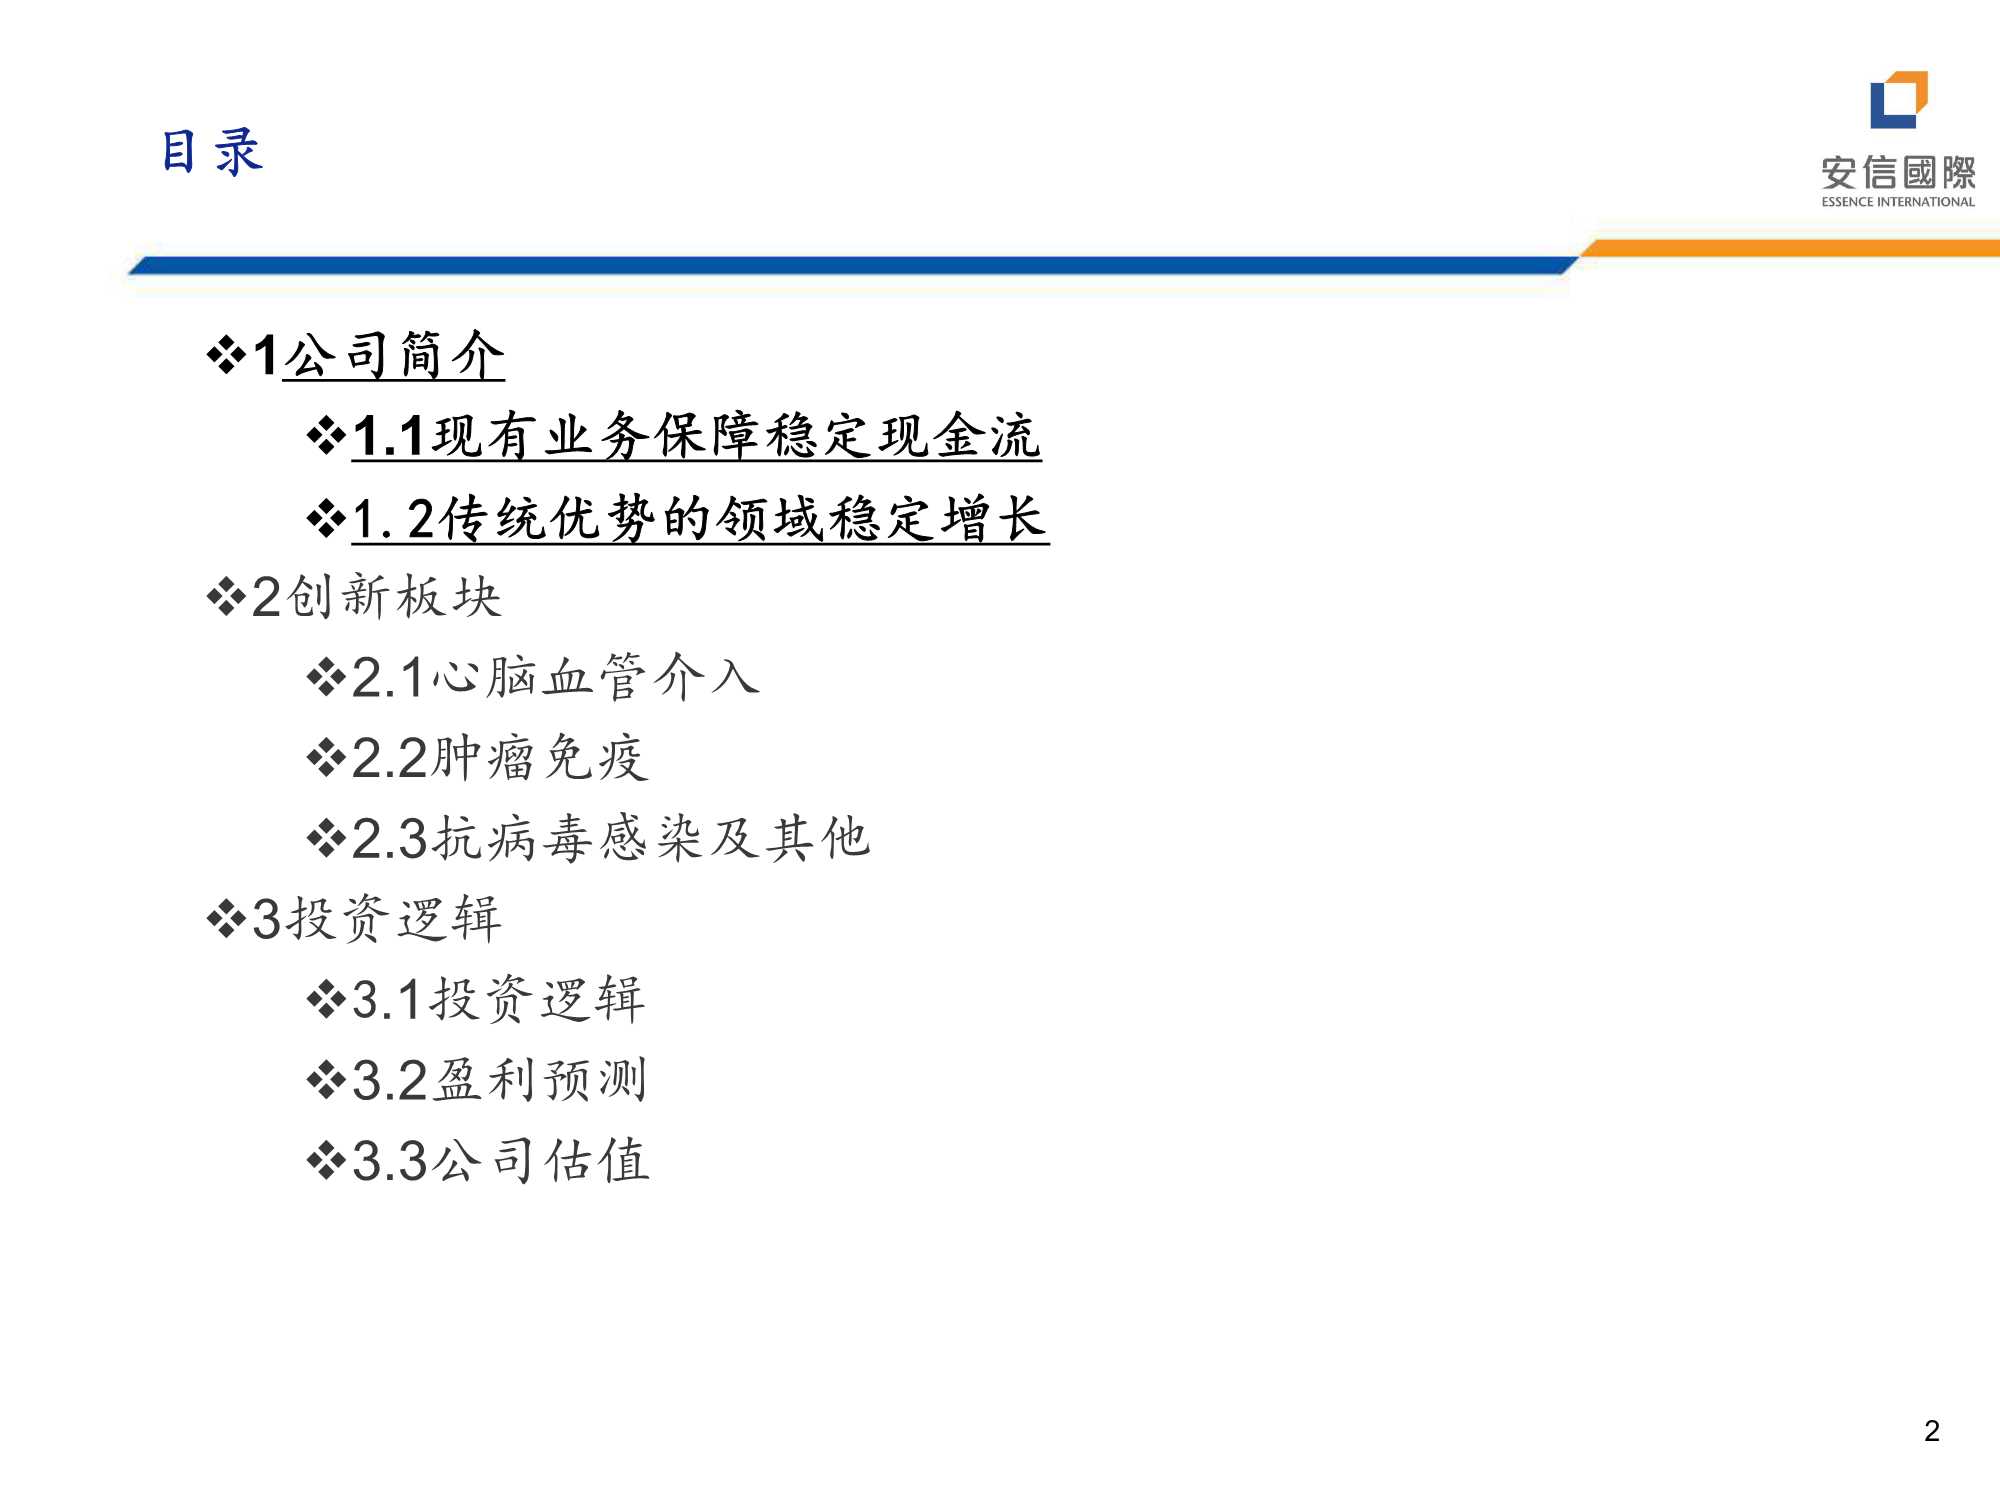 安信国际-远大医药-0512.HK-加速转型创新，商业化落地兑现-20211223-37页